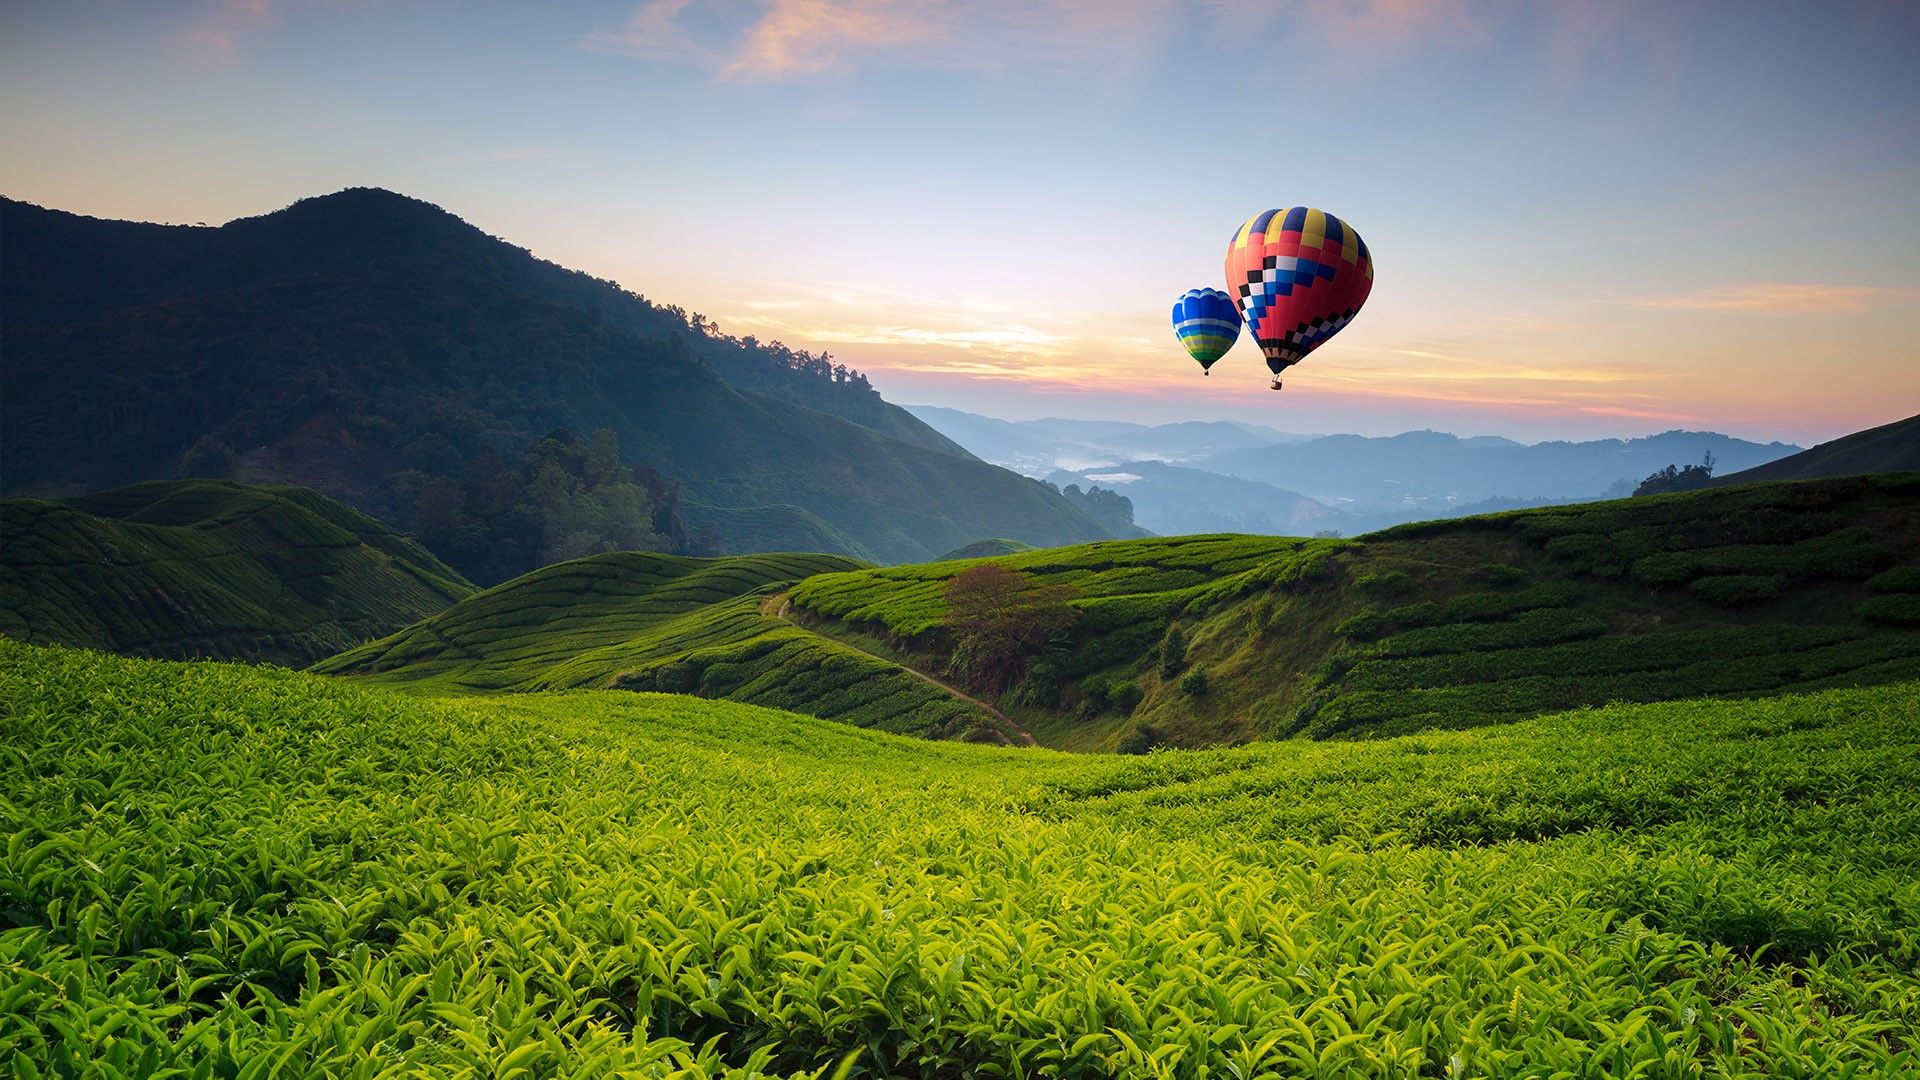 Balloons and tea valley view on sunrise at Cameron Highlands, Tanah Rata, Pahang, Malaysia. Windows 10 Spotlight Image